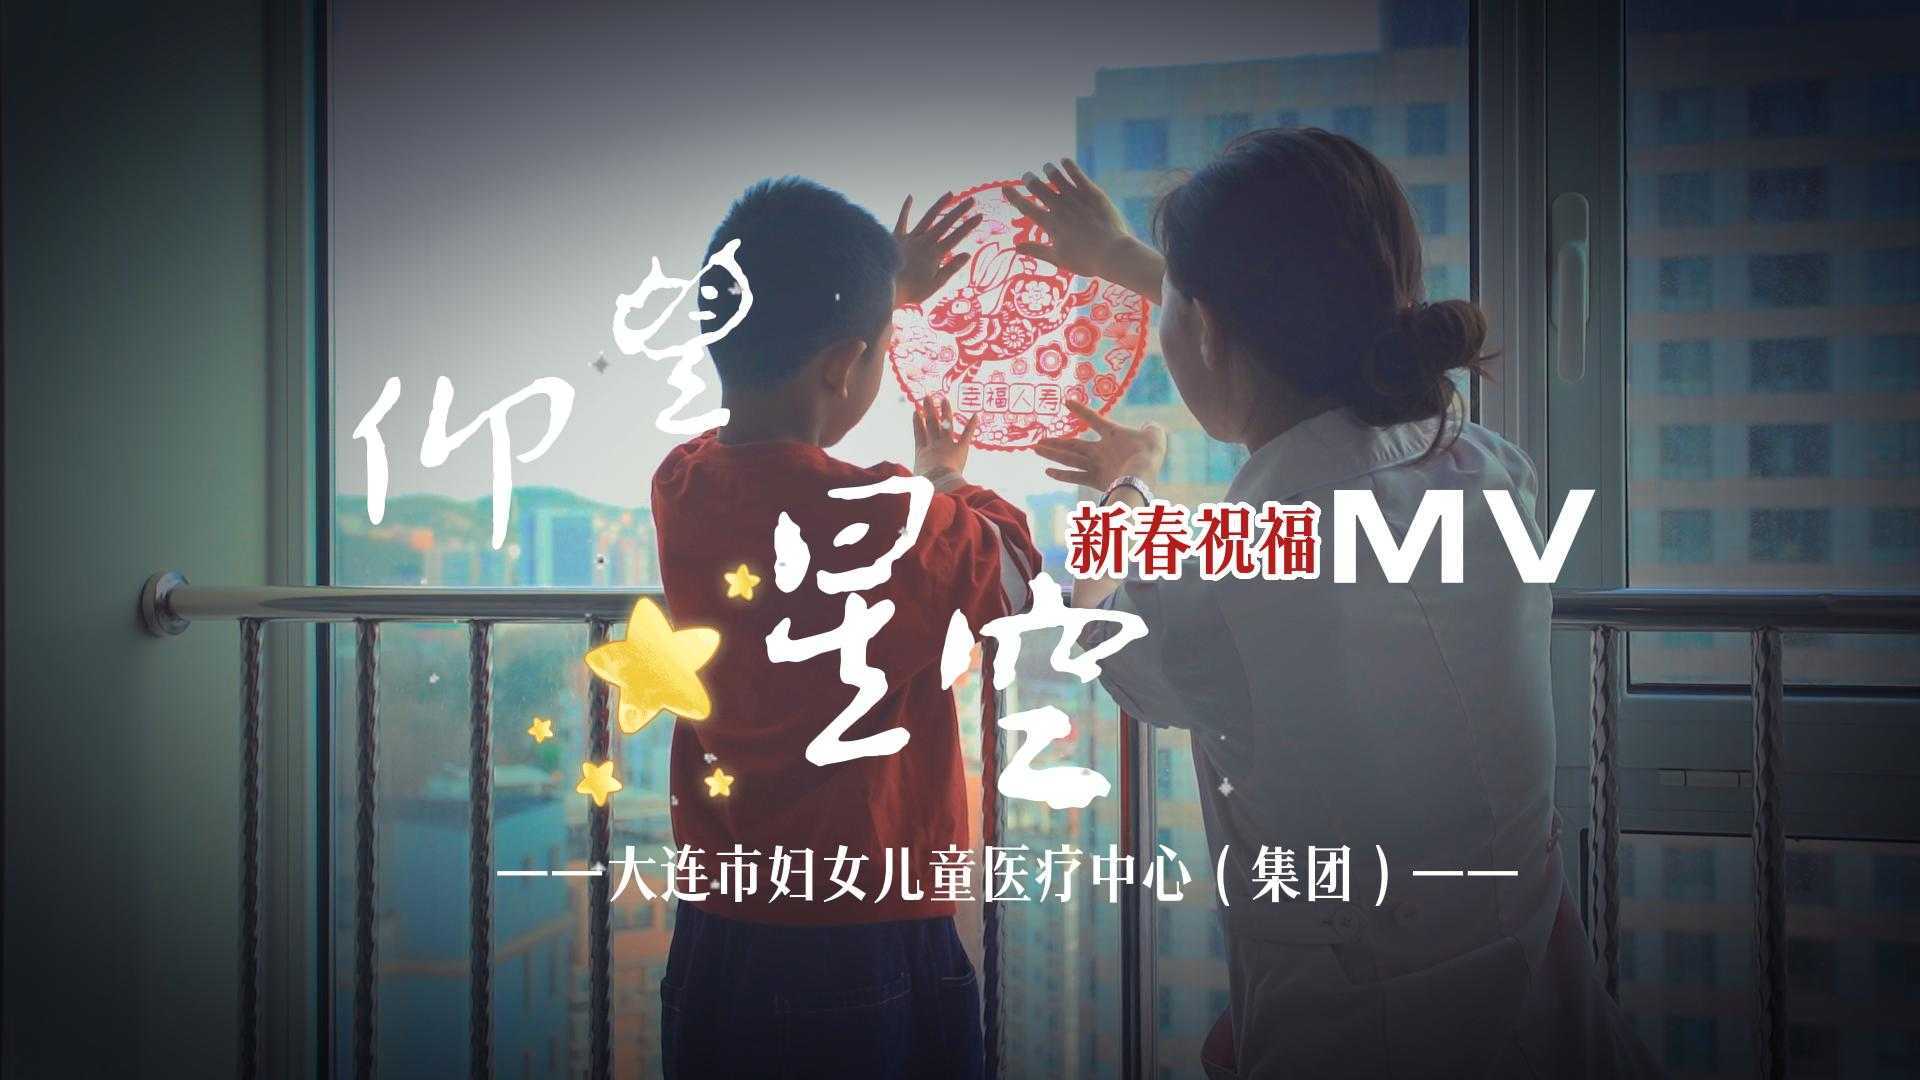 大连市妇女儿童医疗中心（集团）新春MV《仰望星空》